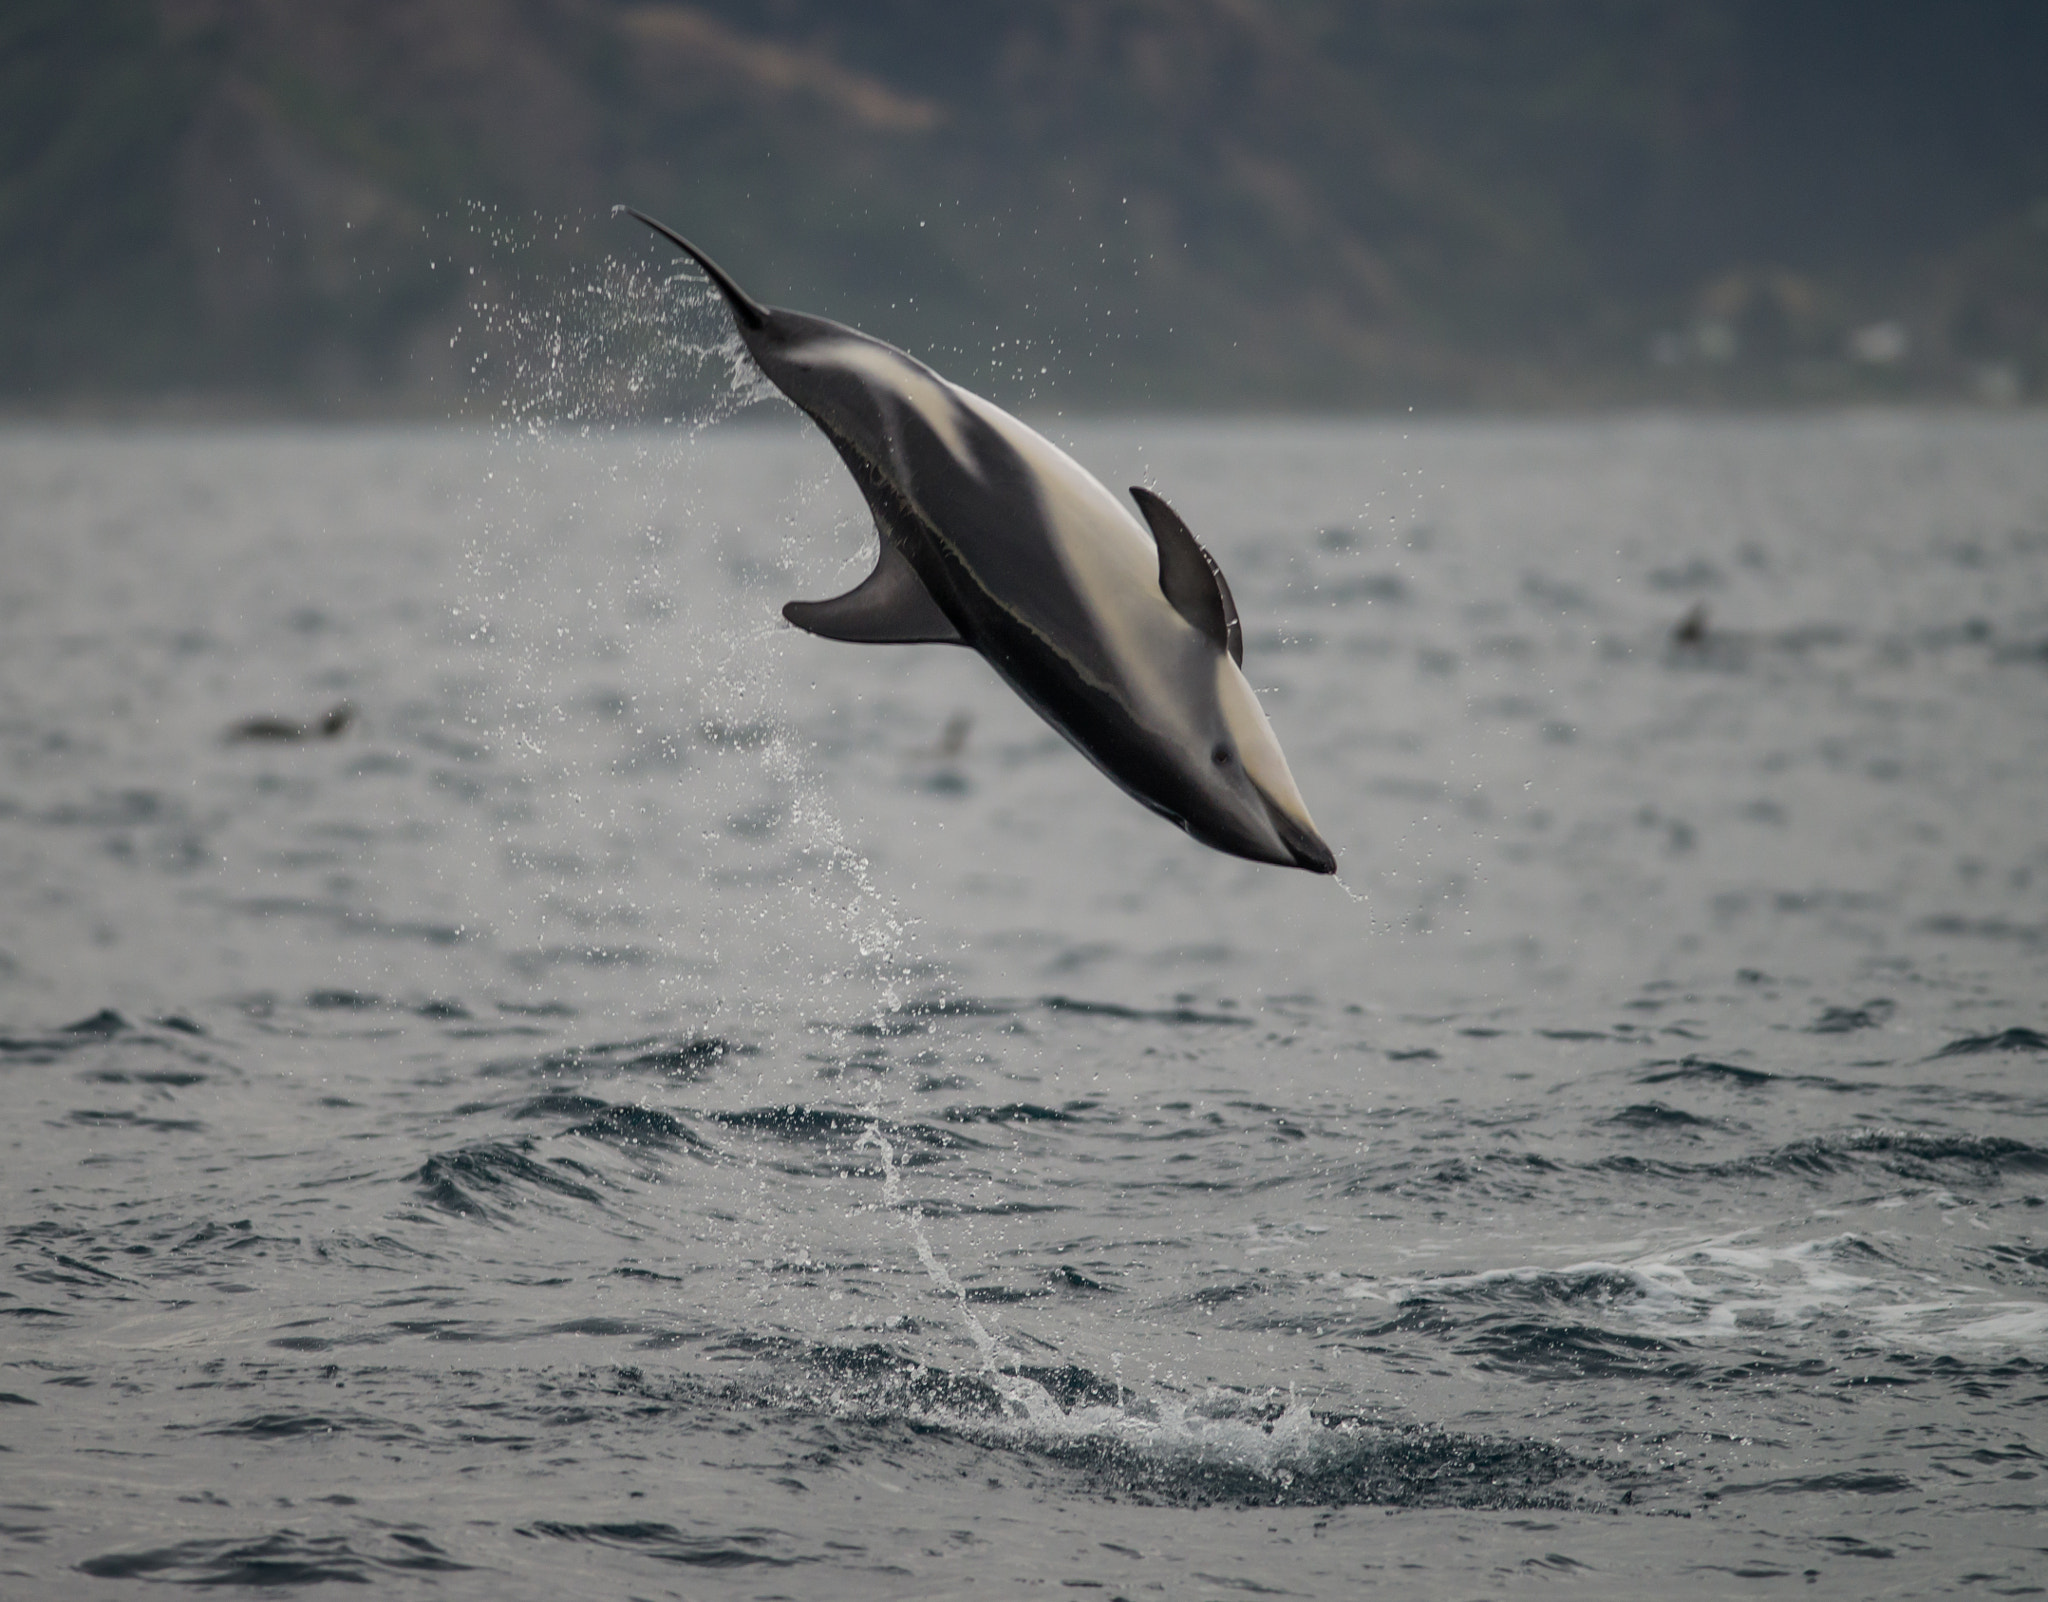 Nikon D600 sample photo. Air time for dusky dolphin photography